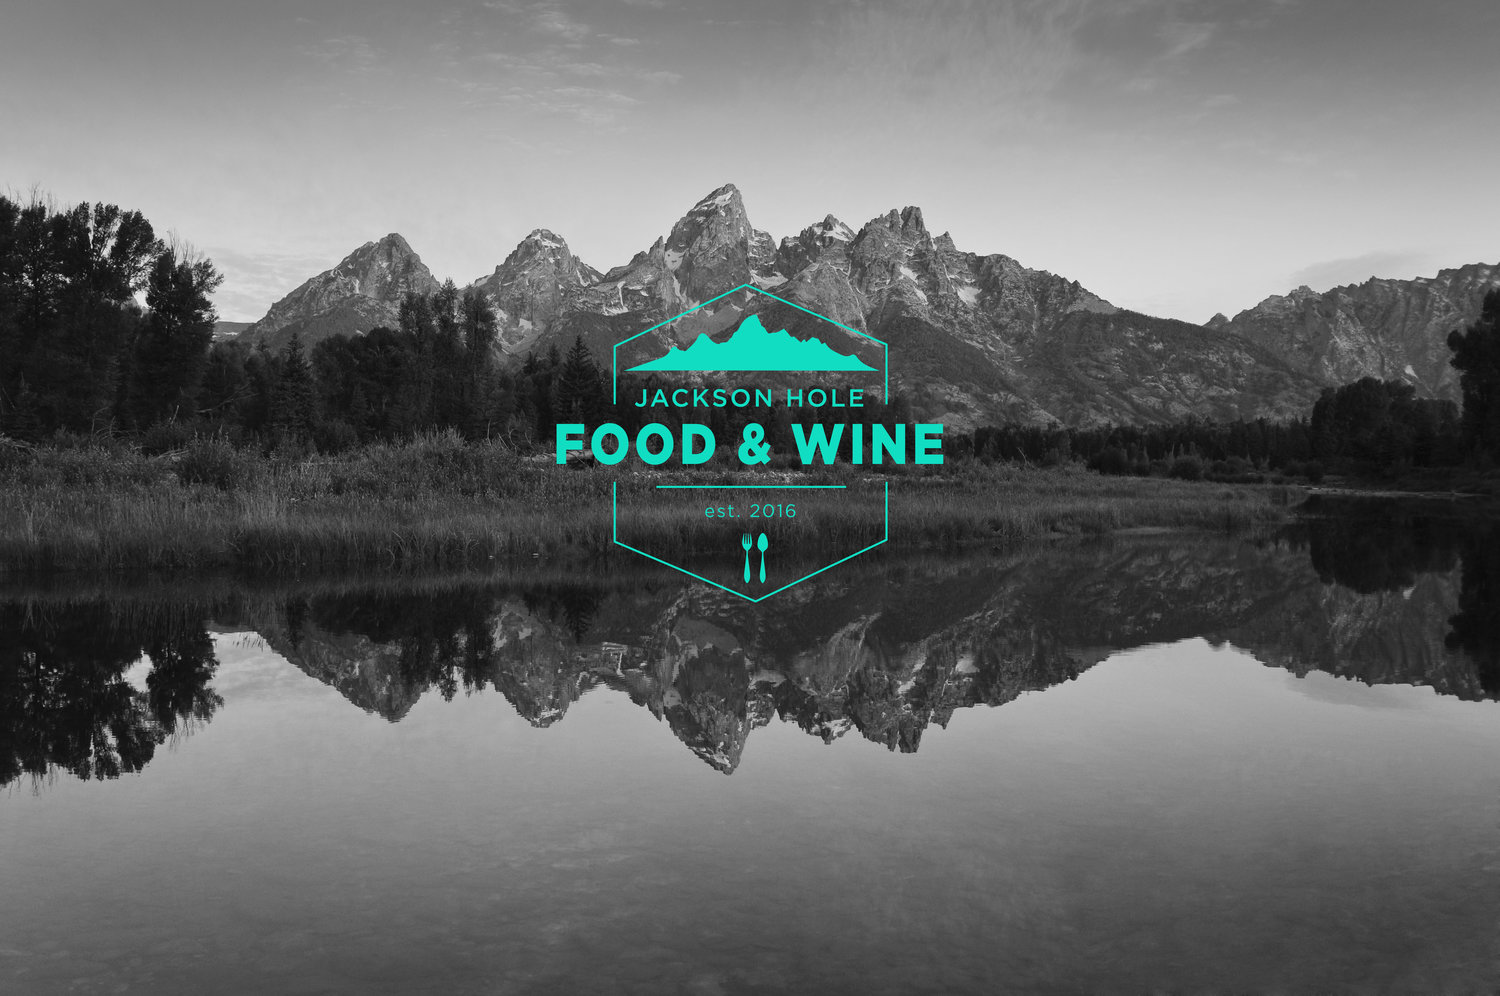 Jackson Hole Food & Wine